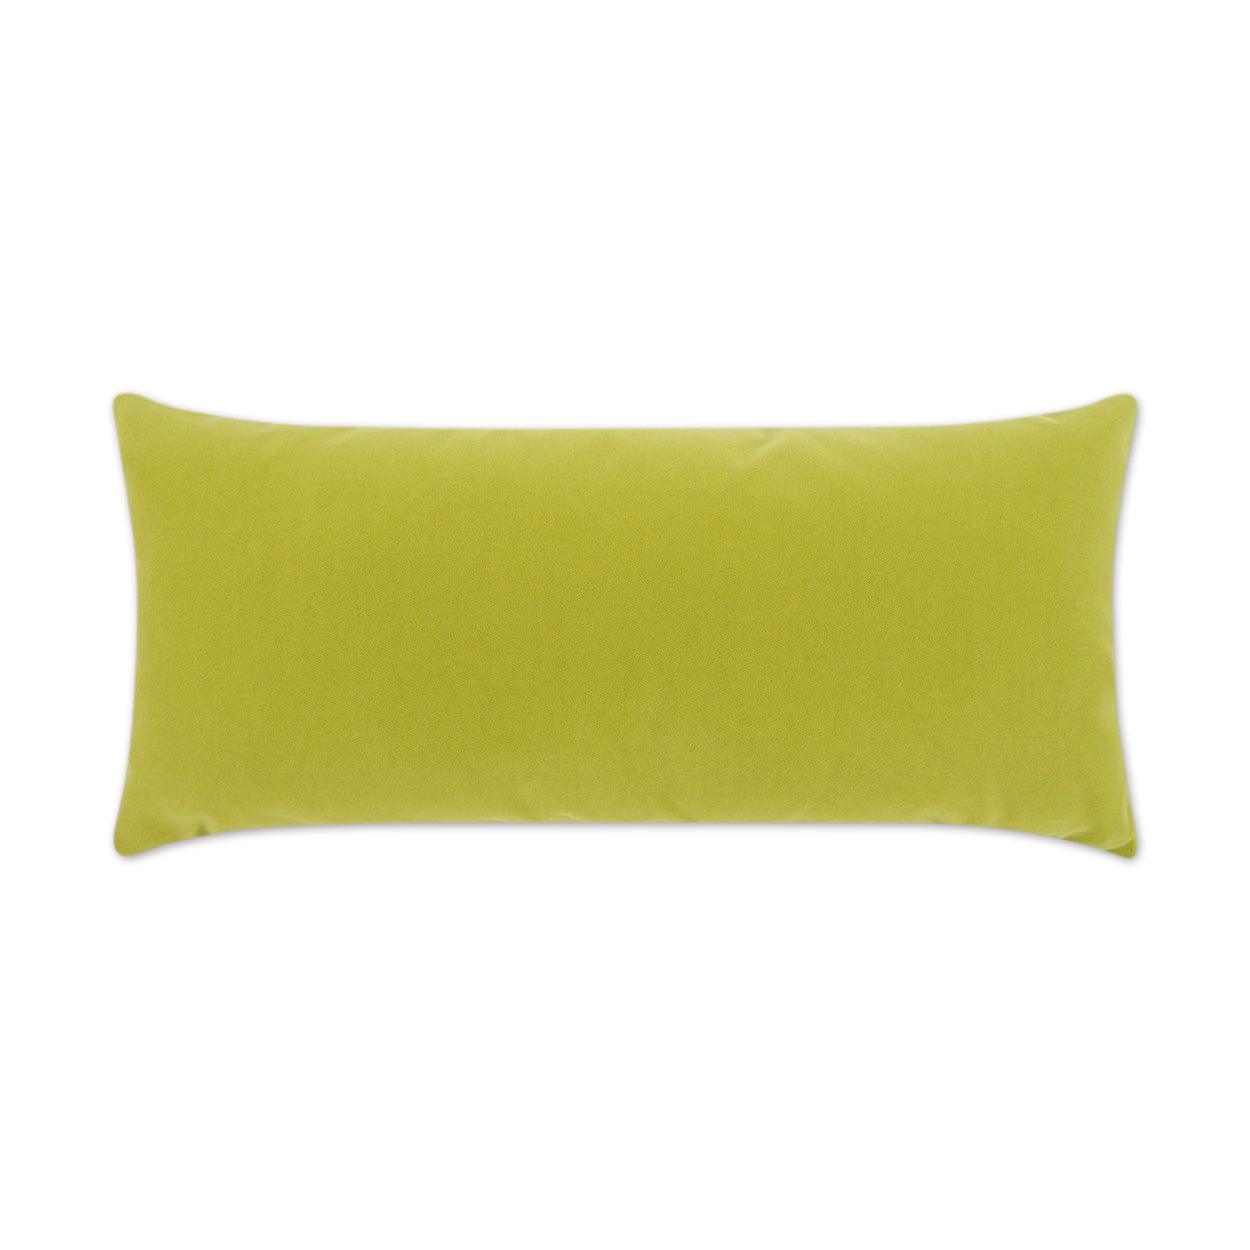 LOOMLAN Outdoor - Outdoor Sundance Duo Lumbar Pillow - Leaf - Outdoor Pillows